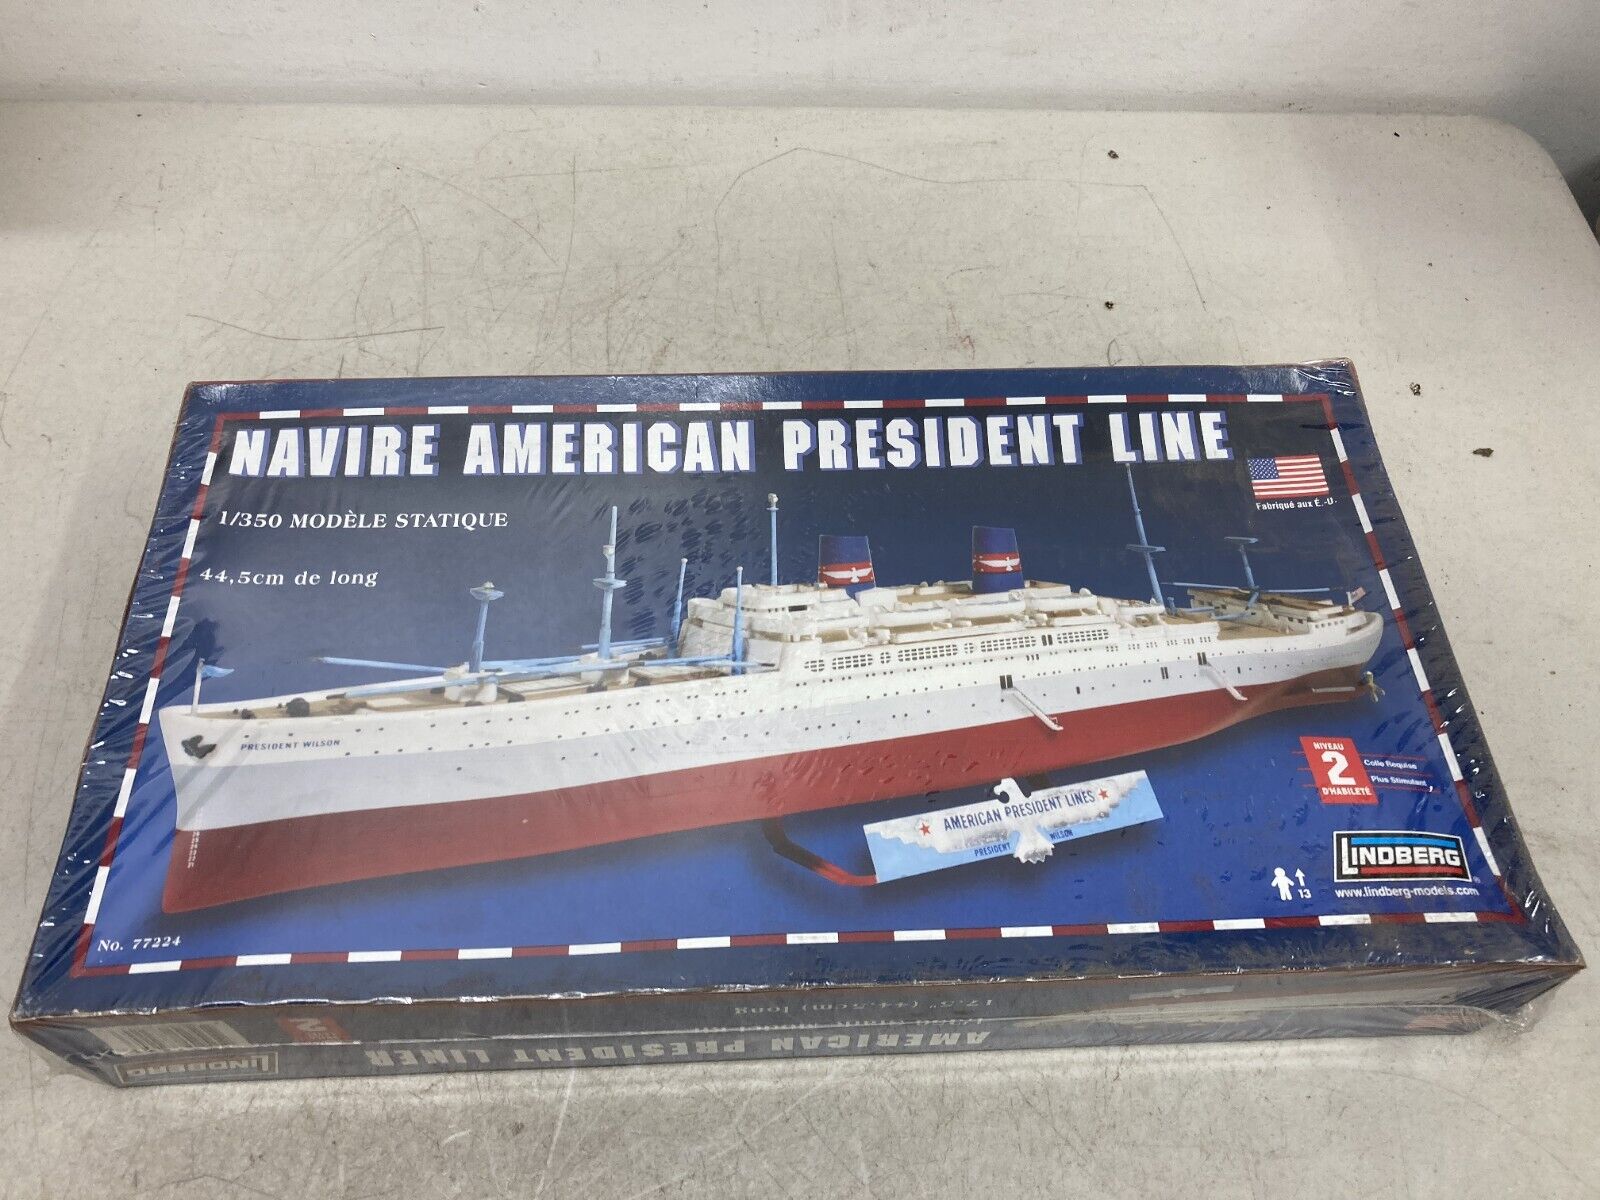 Navire American President Line 1/350 Modele Statique 44.5 cm / 77224 LINDBERG 2e